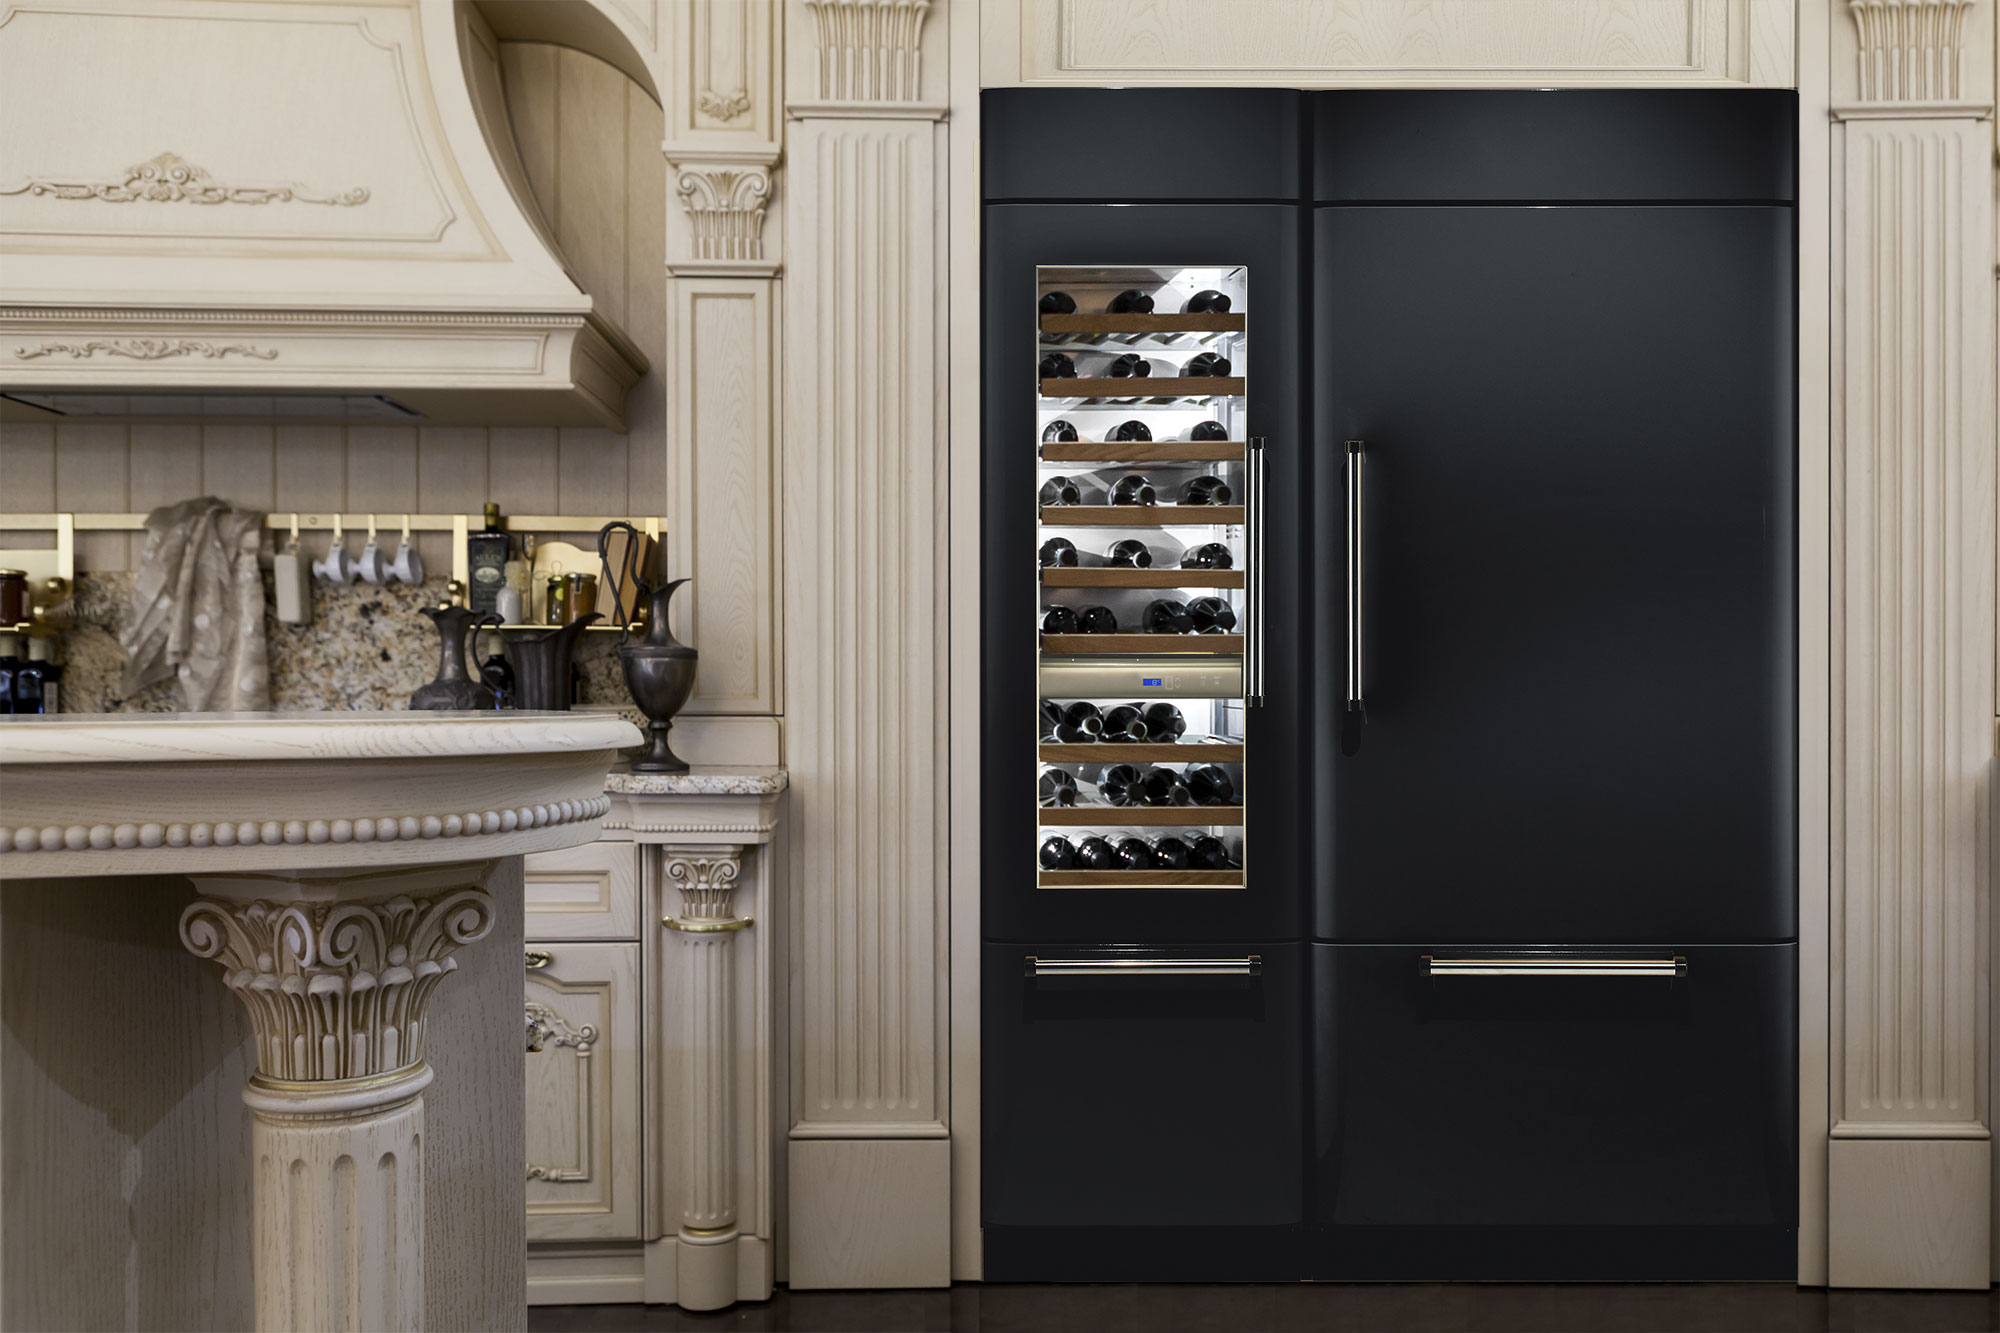 Fhiaba luxe koelwand - zelf samen te stellen modules #keuken #koelkast #wijnklimaatkast #koelvriescombinatie #woneninstijl